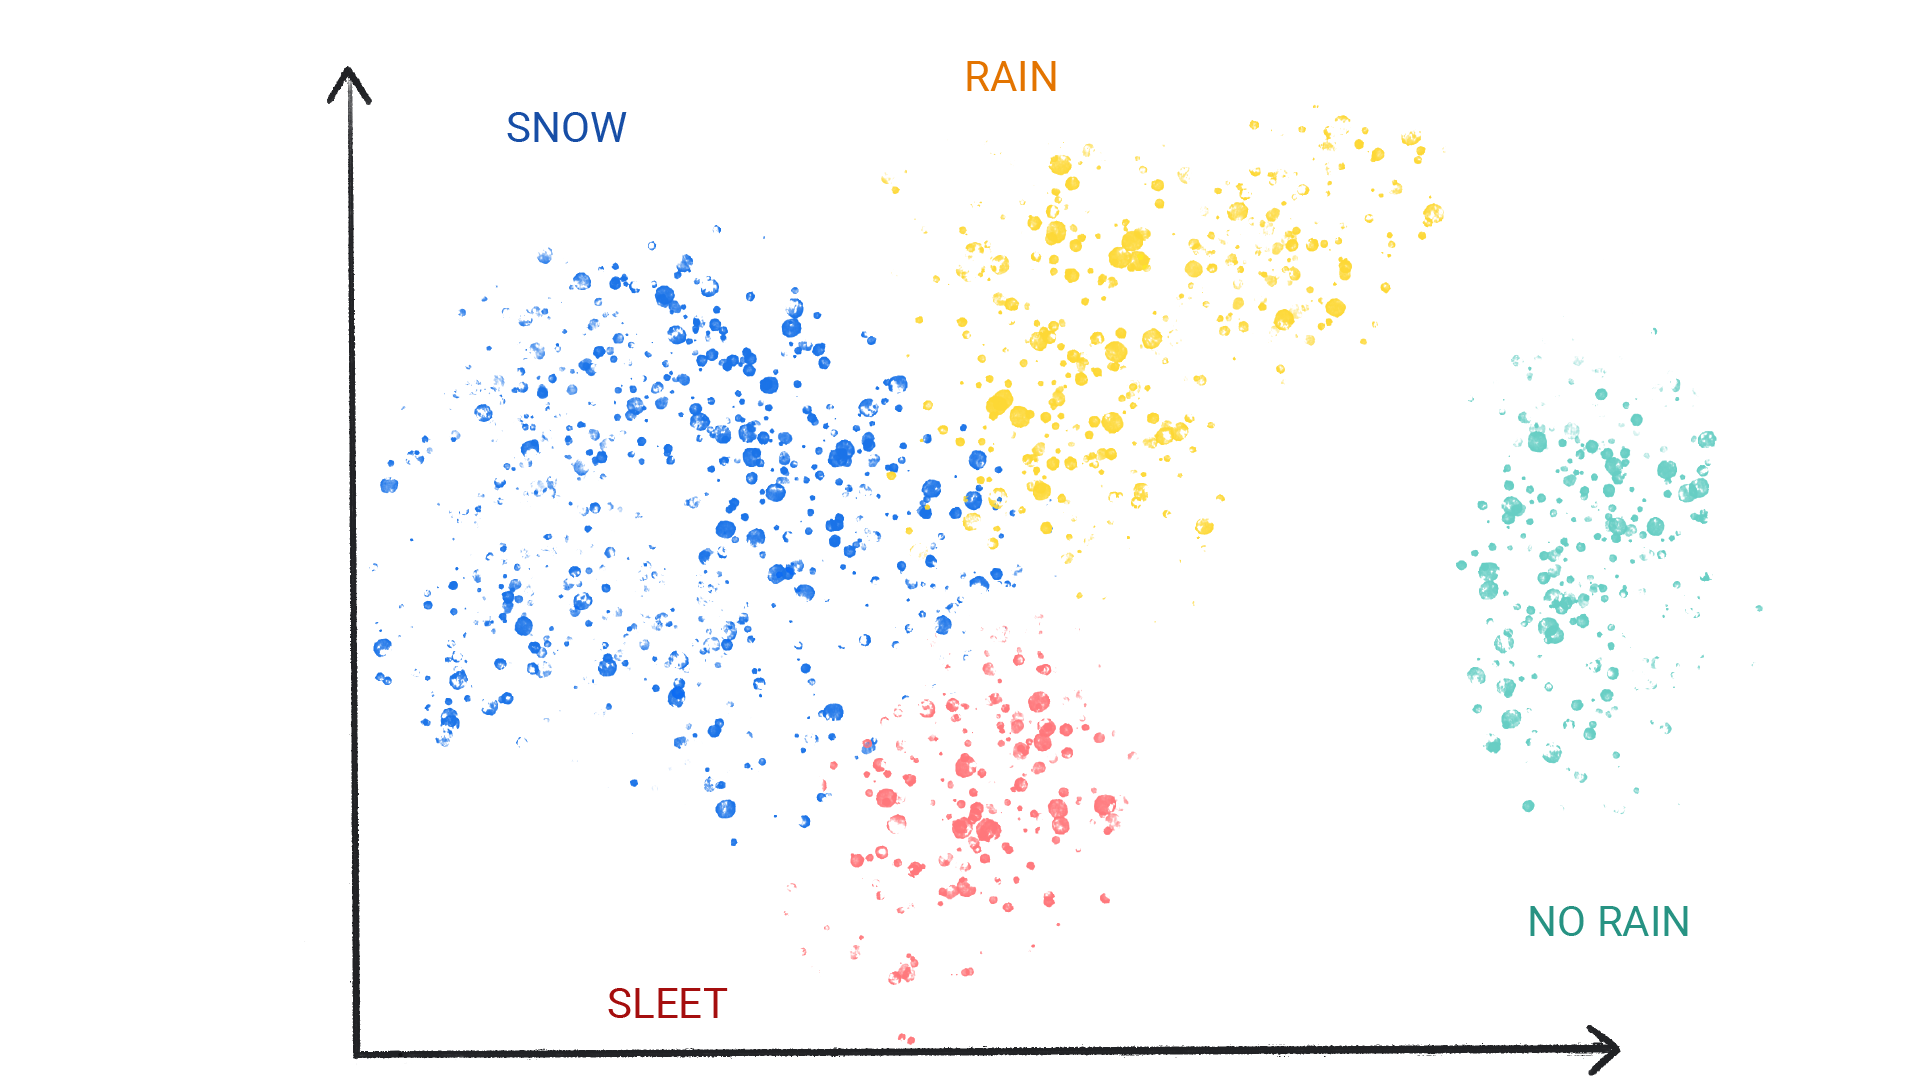 雪、雨、ひょう、雨なしとラベル付けされたクラスター内の色付きのドットを示す画像。